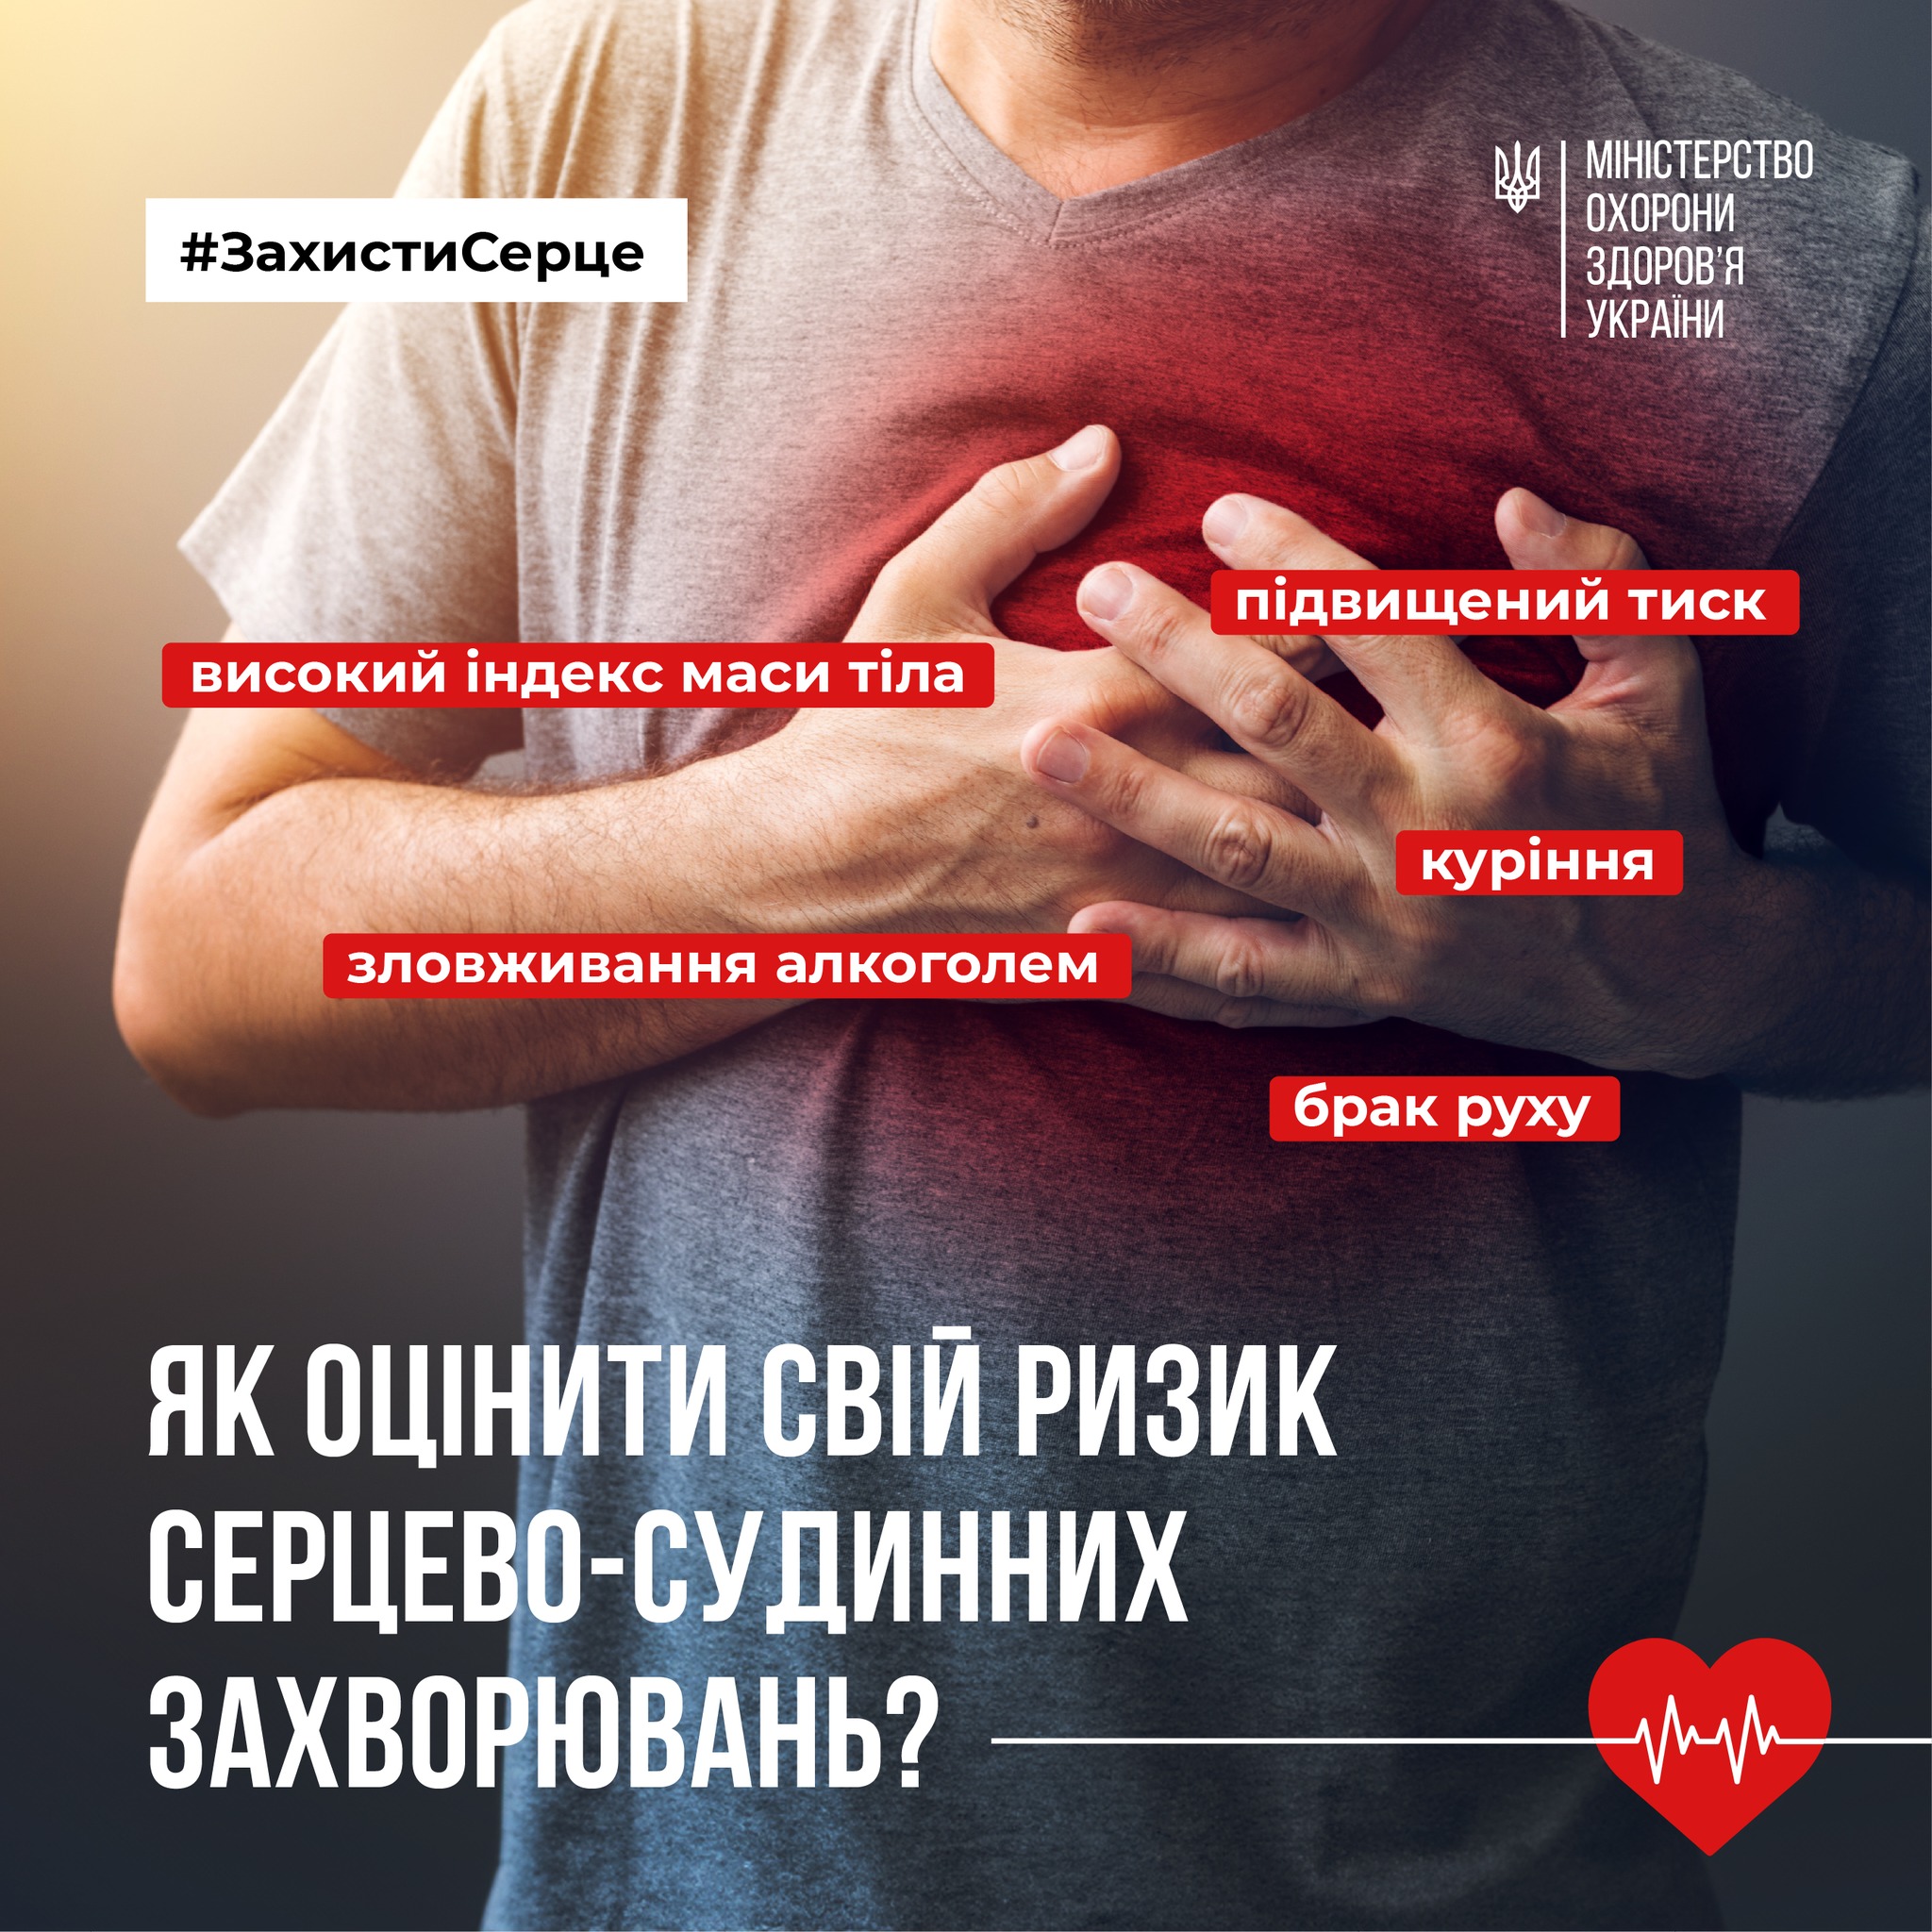 Серцево-судинні захворювання – це передусім наслідок способу життя